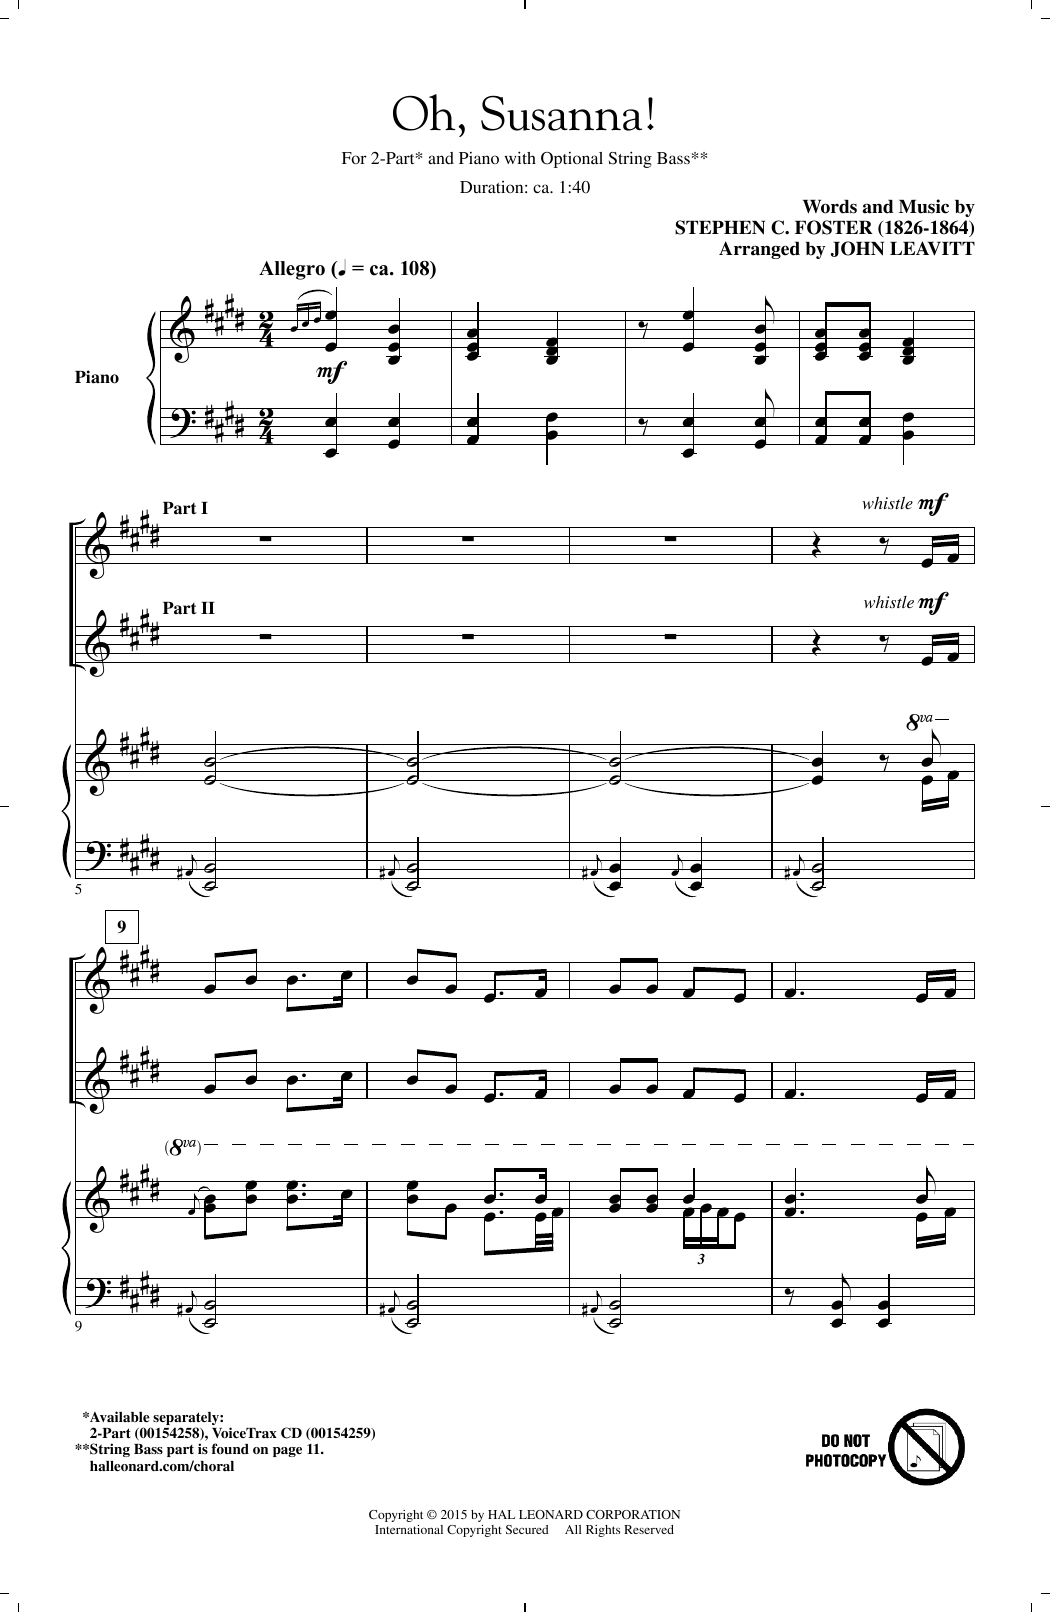 Download Stephen Foster Oh! Susanna (arr. John Leavitt) Sheet Music